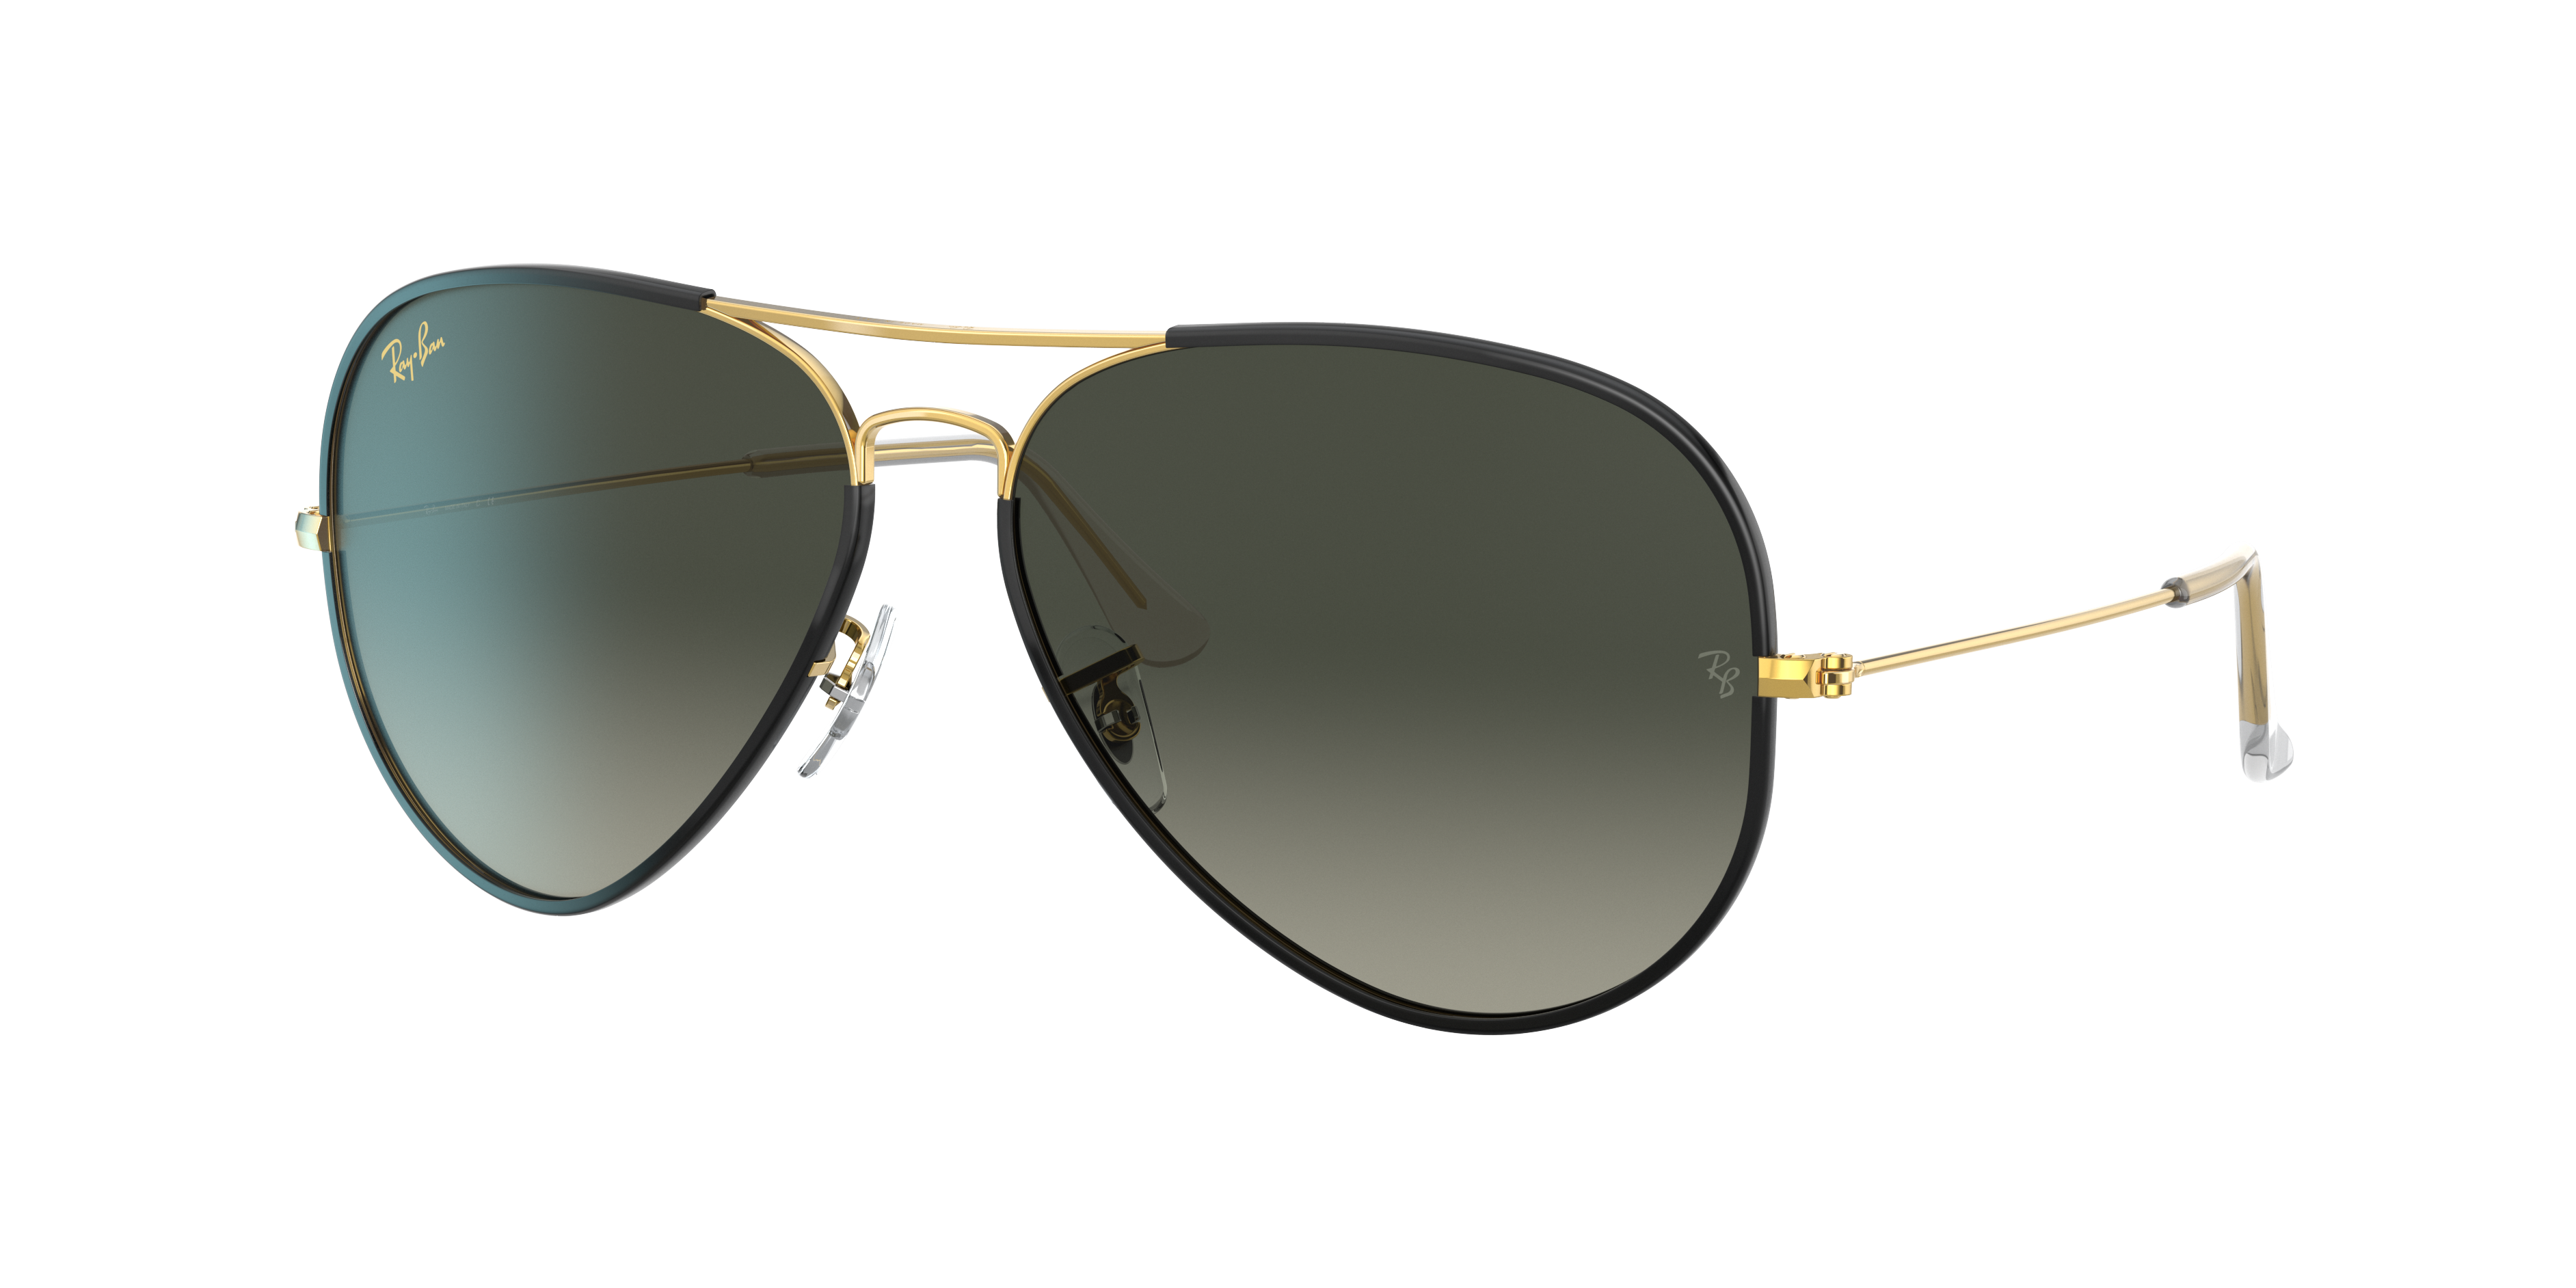 Ray Ban Aviator Full Color Legend Sunglasses Gold Frame Grey Lenses 58-14